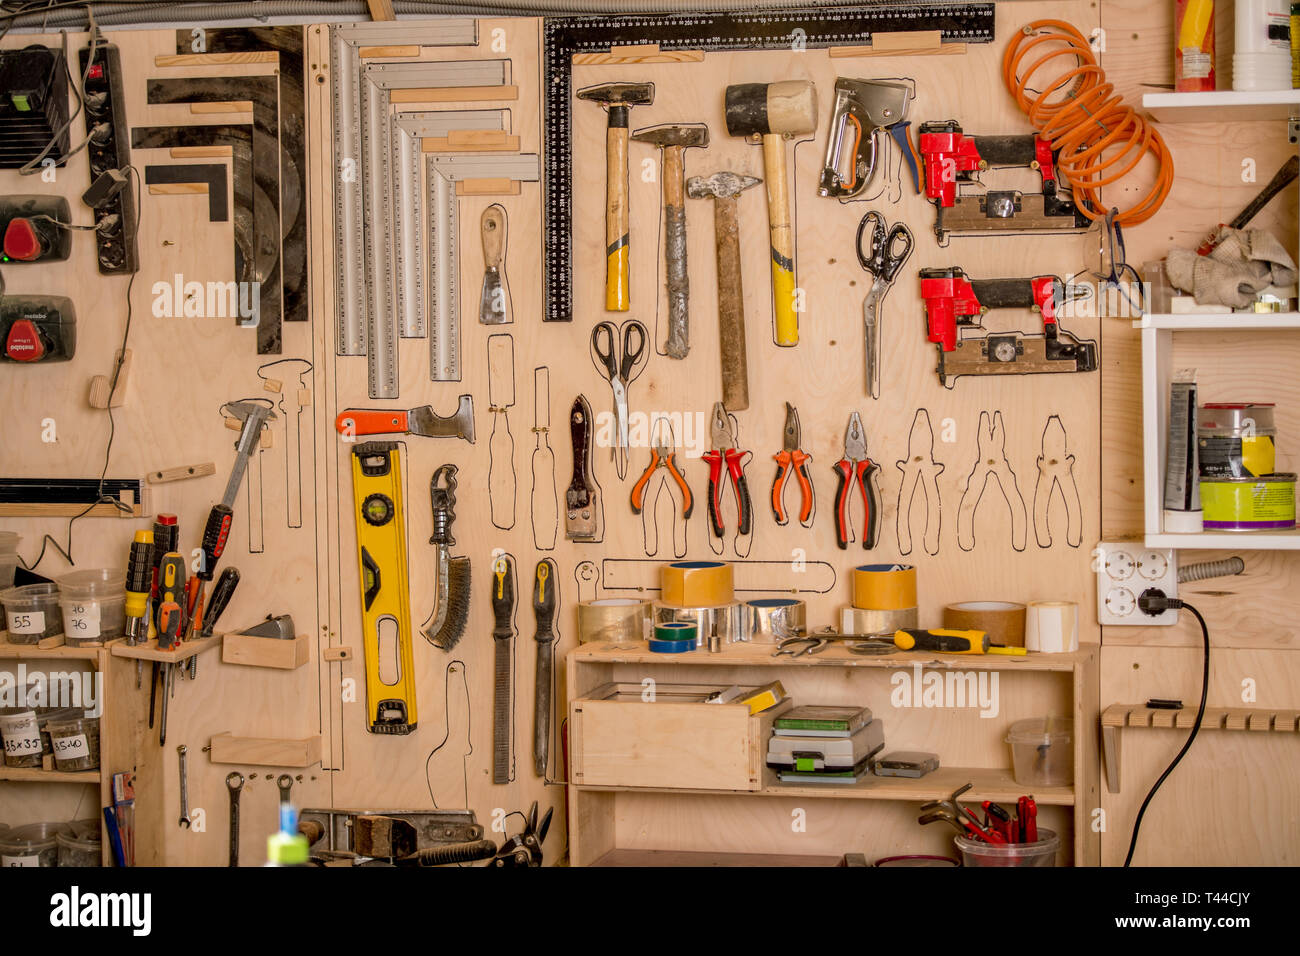 https://c8.alamy.com/compes/t44cjy/taller-escena-gran-variedad-de-herramientas-de-carpinteria-colgando-en-el-gran-tablero-de-herramientas-lapiz-contorno-trazado-para-cada-herramienta-para-ayudar-a-determinar-el-lugar-t44cjy.jpg